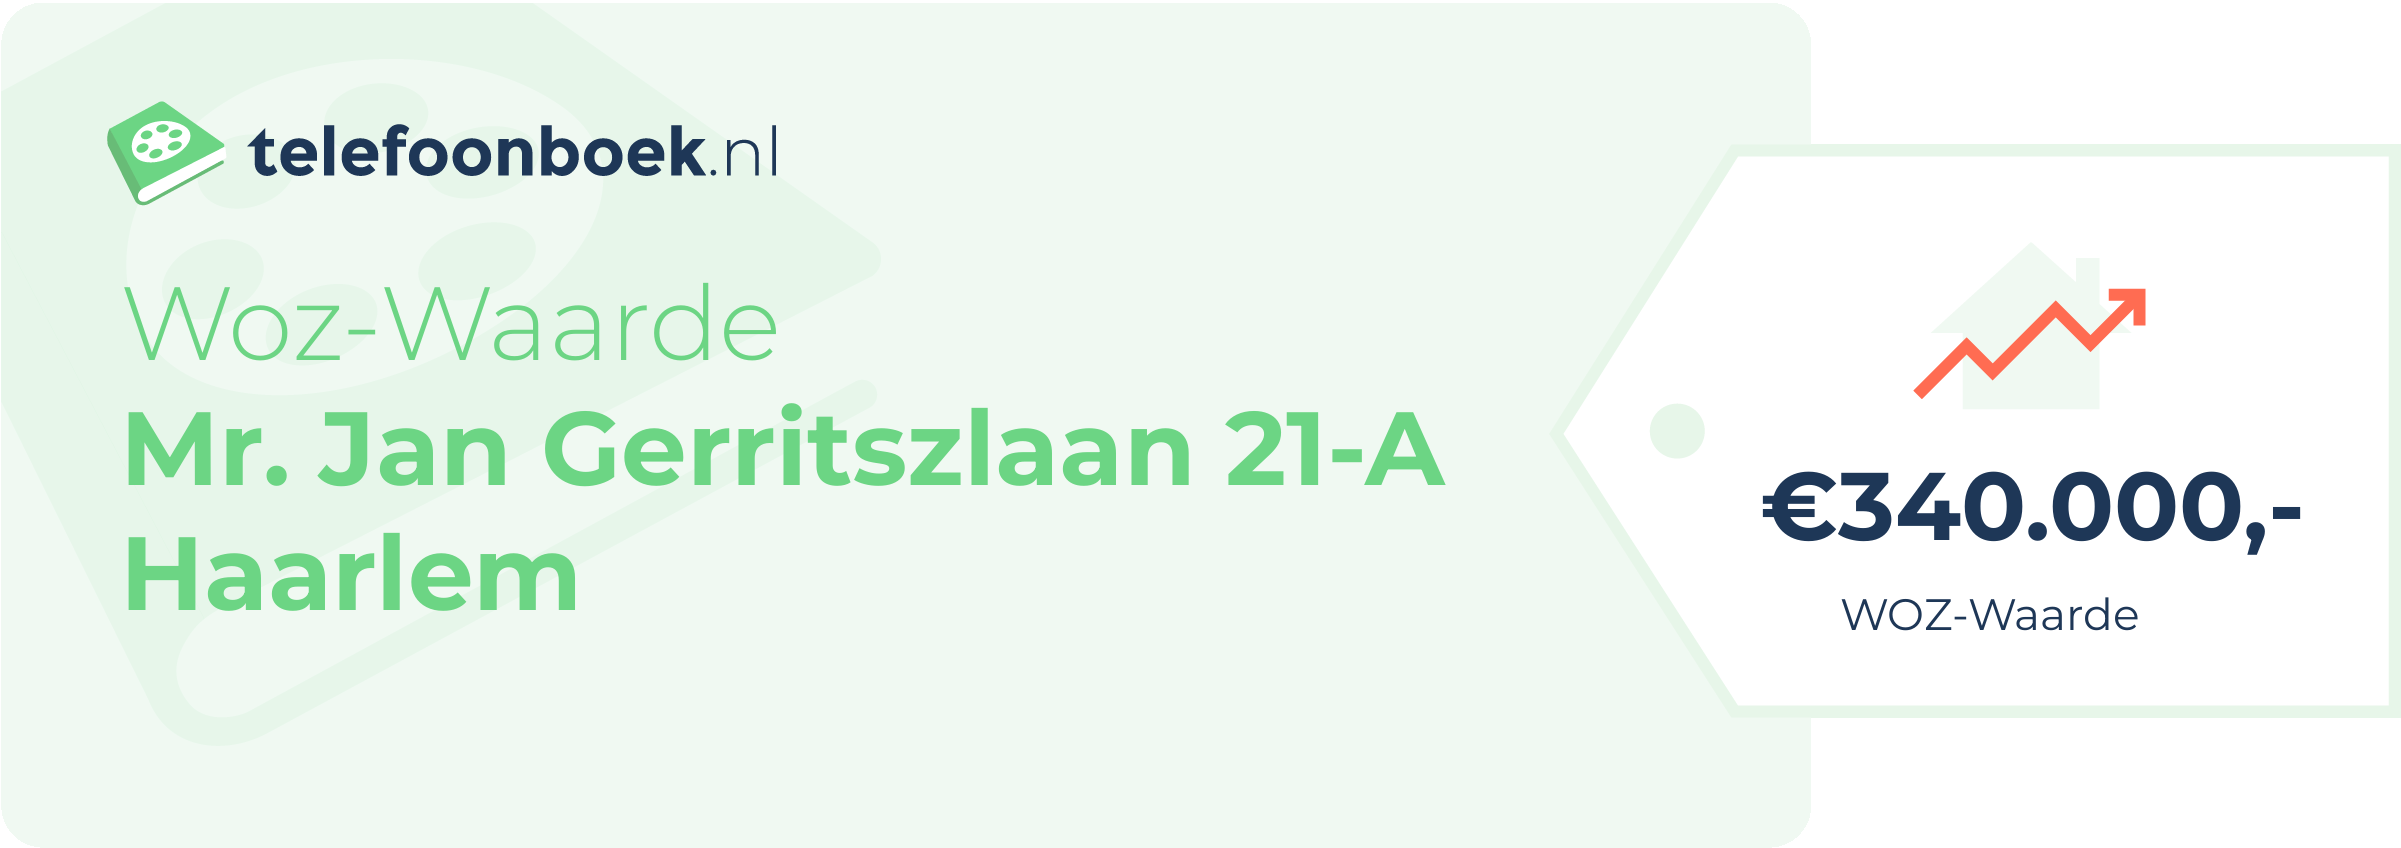 WOZ-waarde Mr. Jan Gerritszlaan 21-A Haarlem